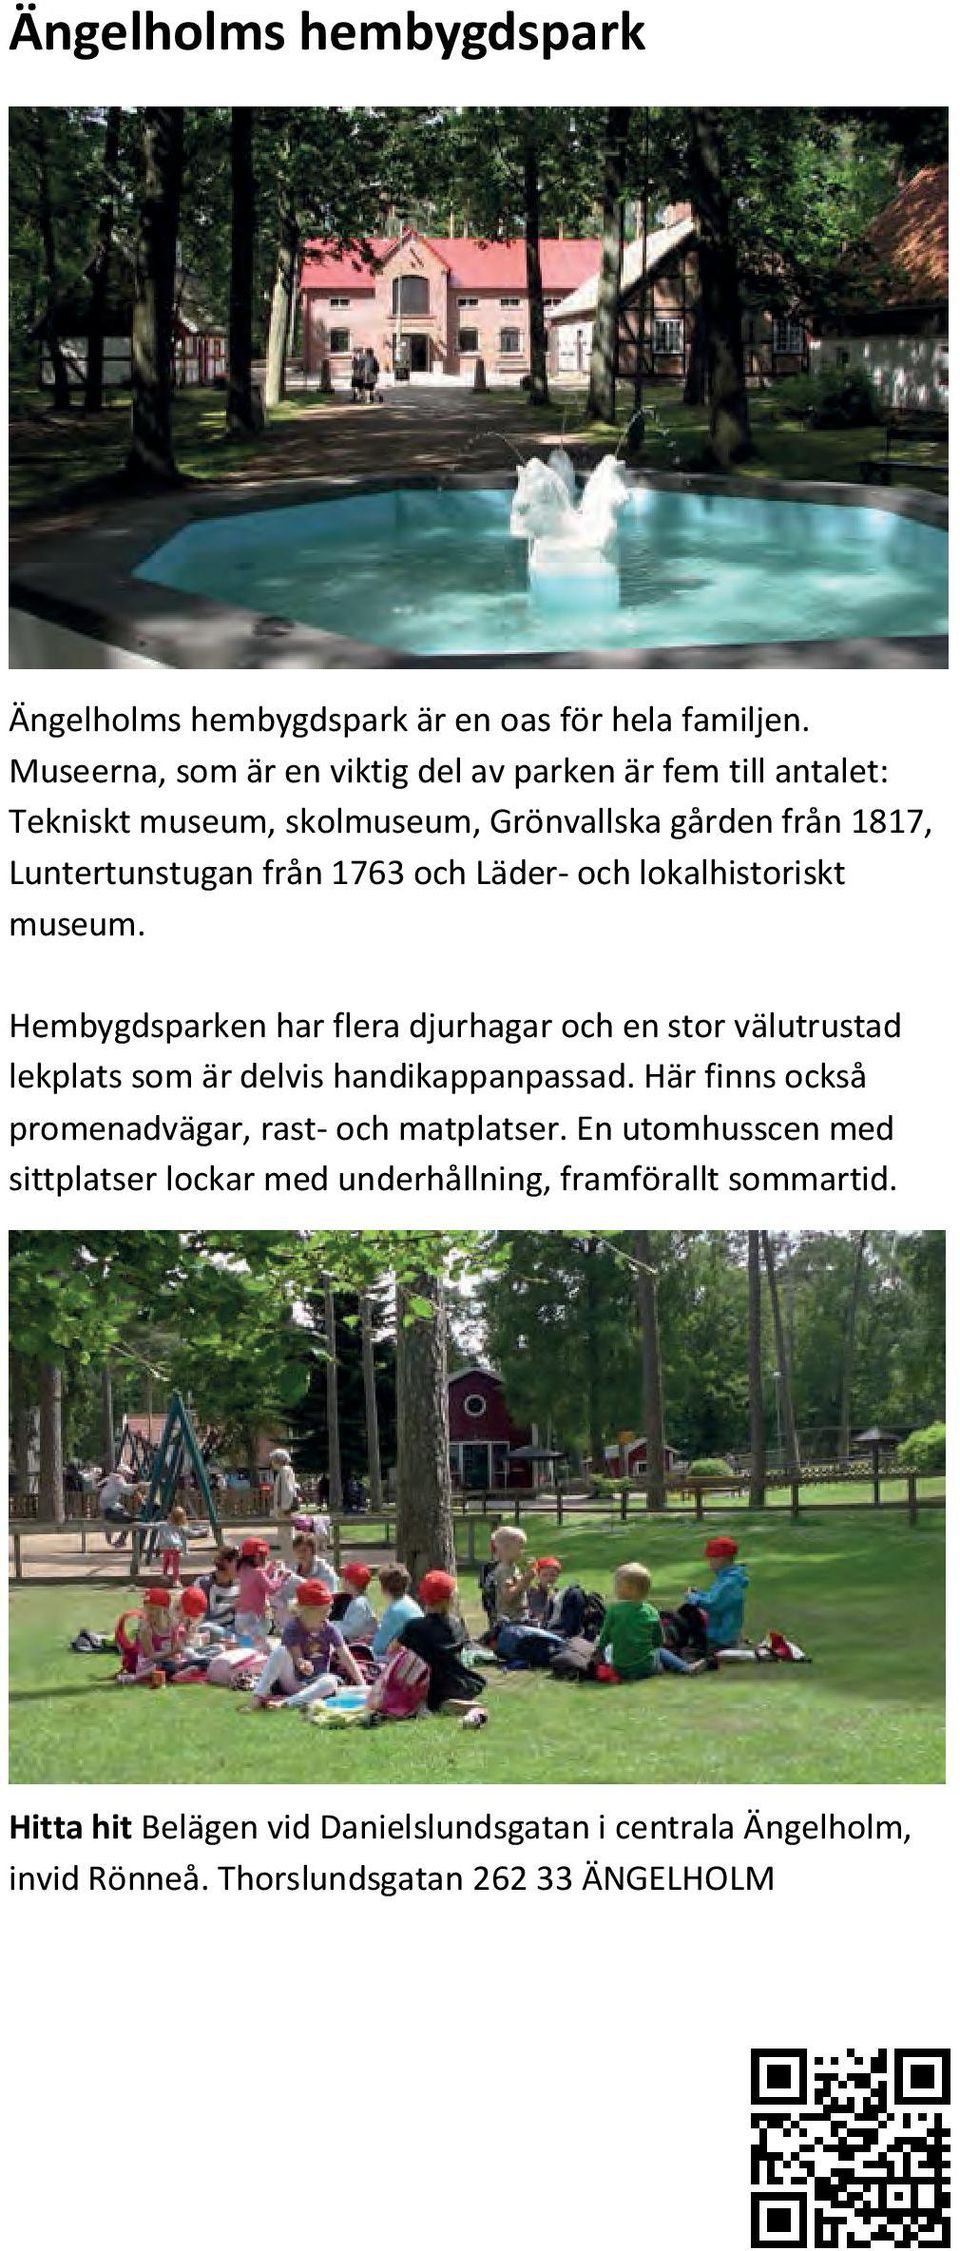 till antalet: Museerna, Tekniskt museum, som är en skolmuseum, viktig del av Grönvallska parken är fem gården till antalet: från 1817, Tekniskt Luntertunstugan museum, från skolmuseum, 1763 och